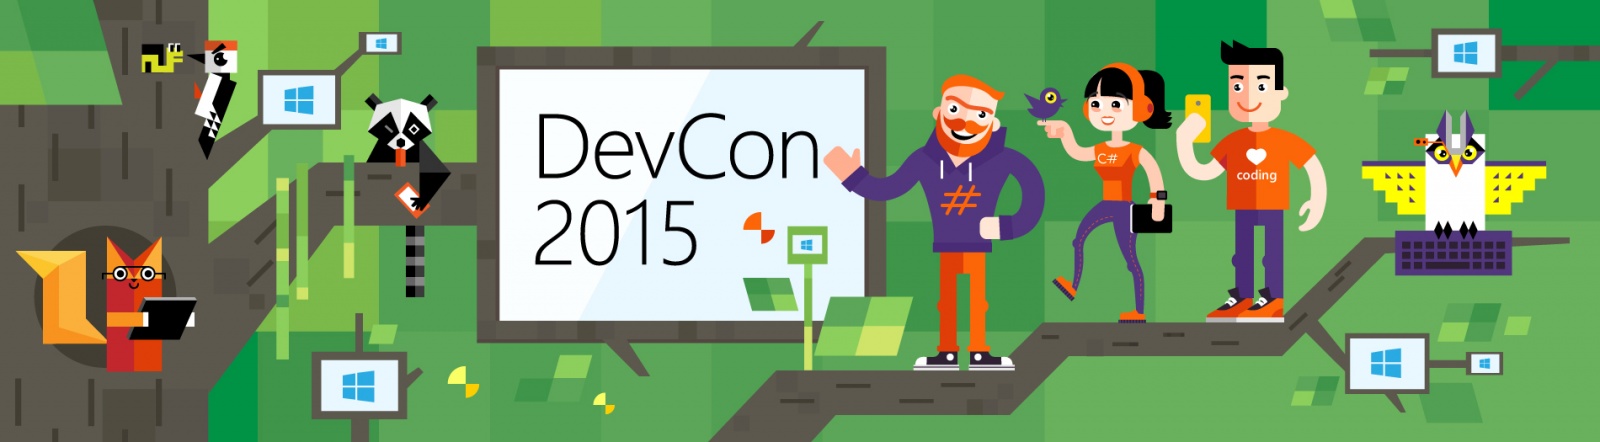 DevCon 2015: анонс первых спикеров и докладов конференции - 1